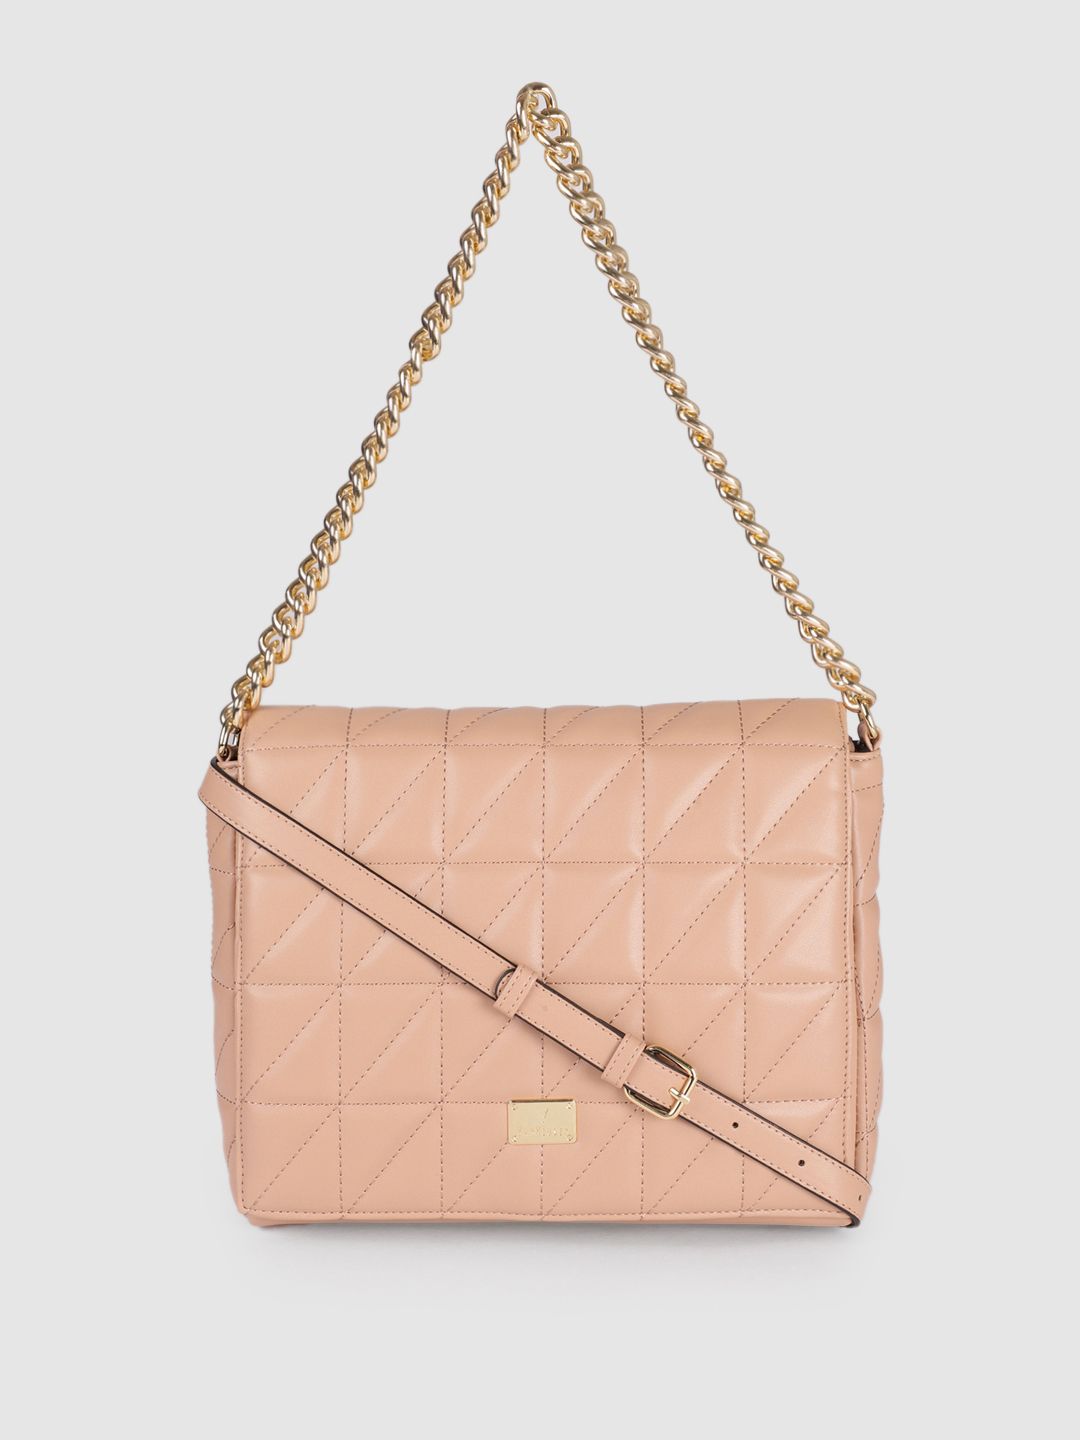 Van Heusen Pink Quilted Shoulder Bag Price in India